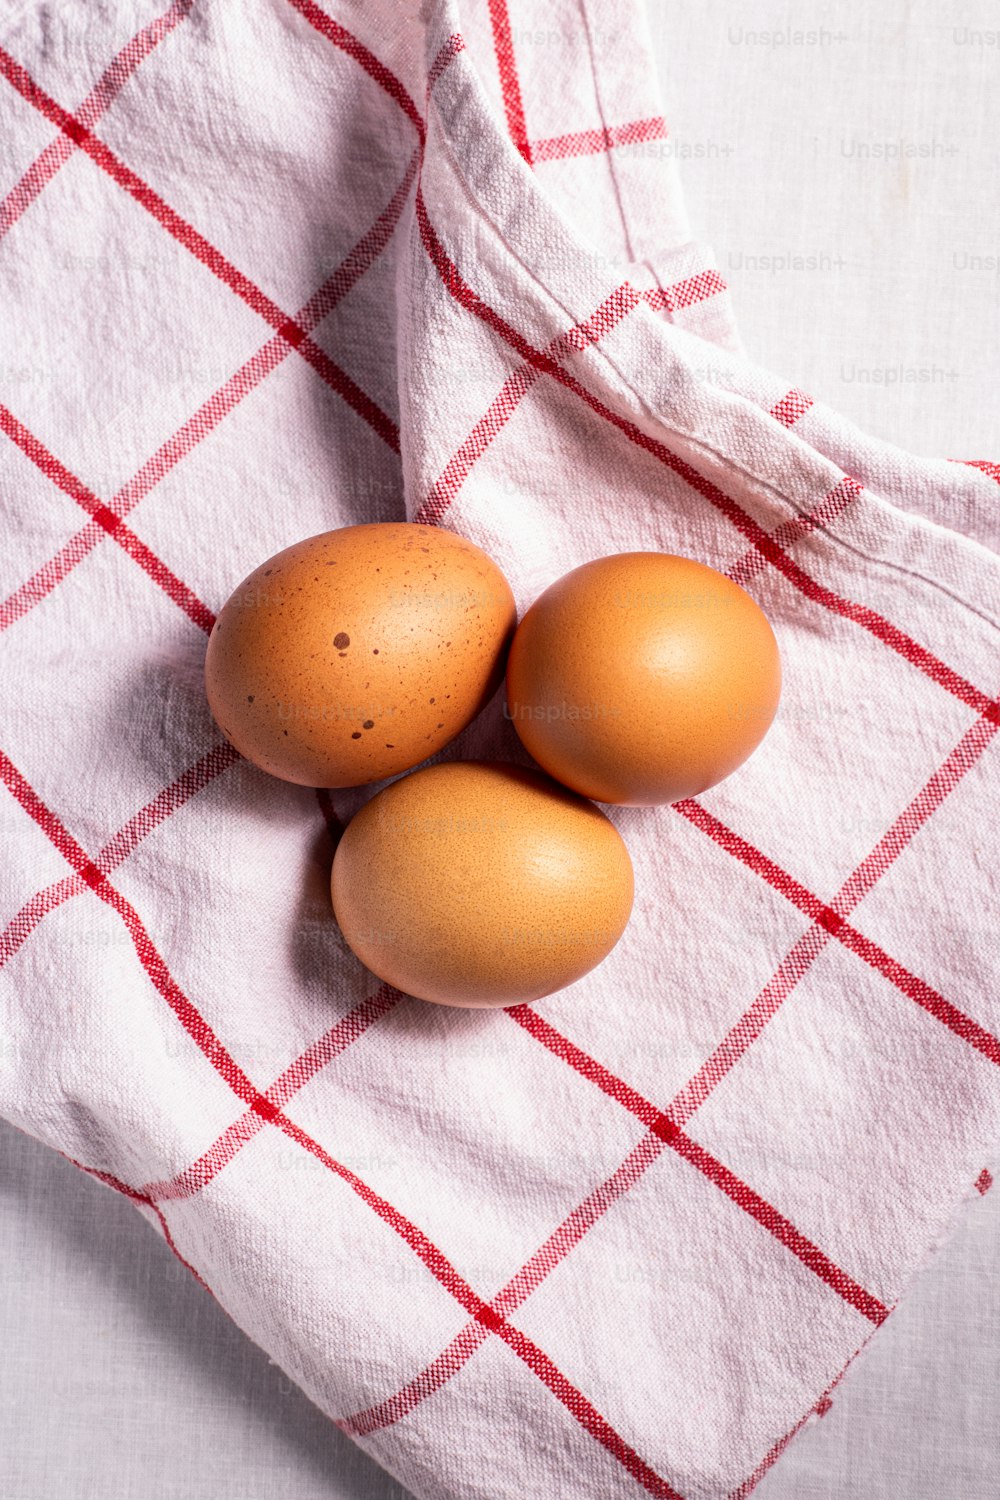 Tres huevos marrones en una toalla a cuadros roja y blanca